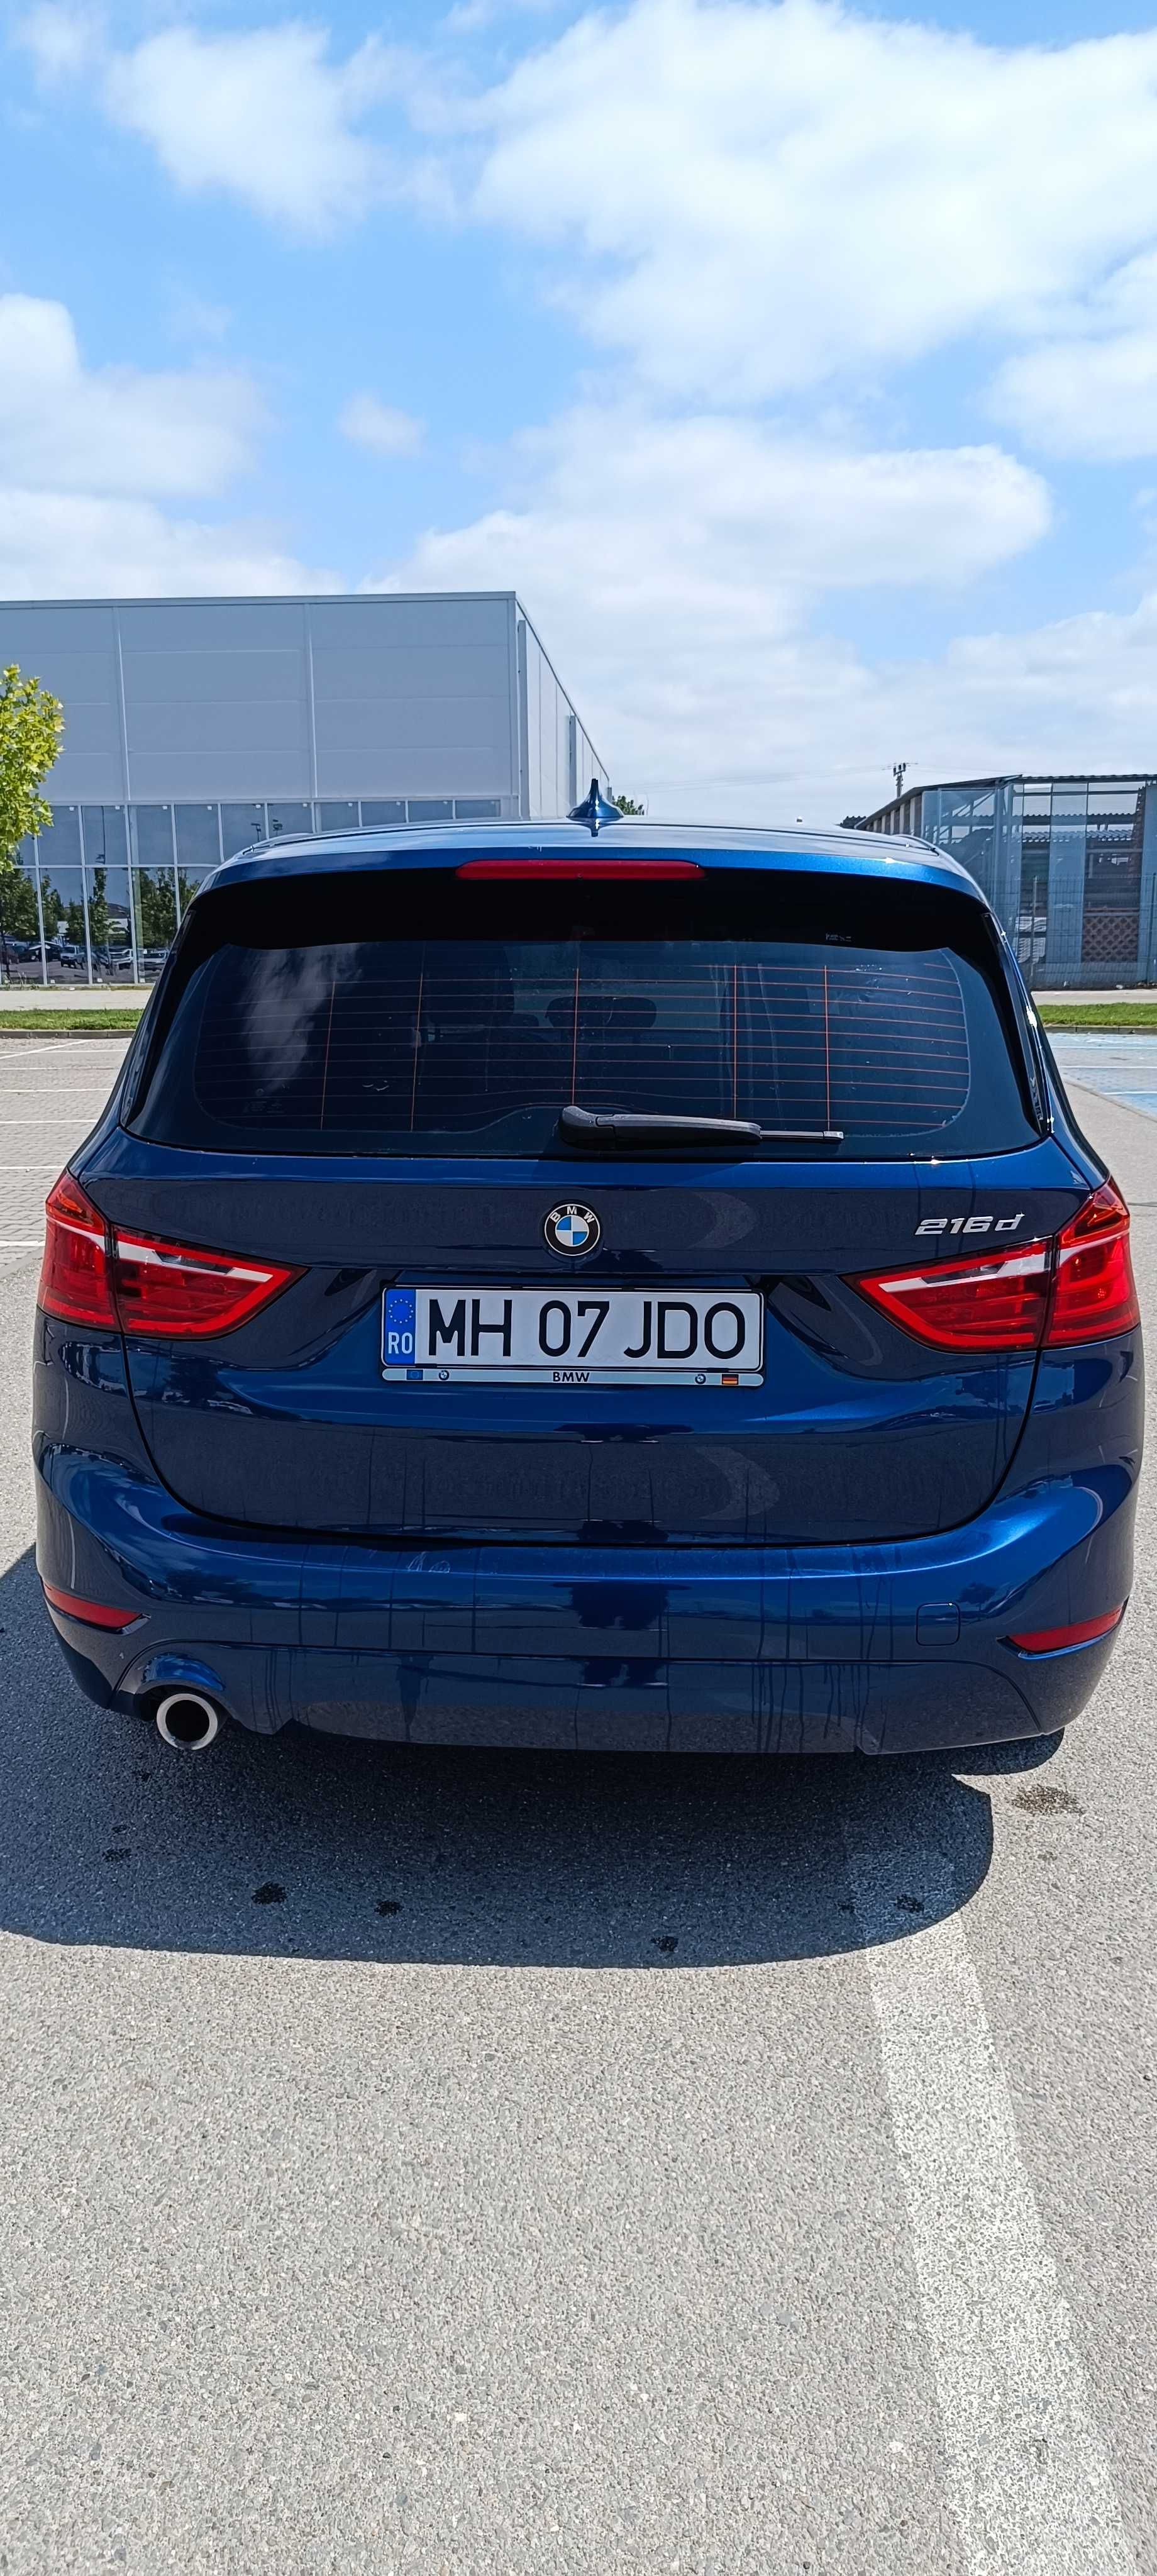 BMW seria 2 Gran Tourer /7 locuri ~ 216d /an 2018 1.5 diesel